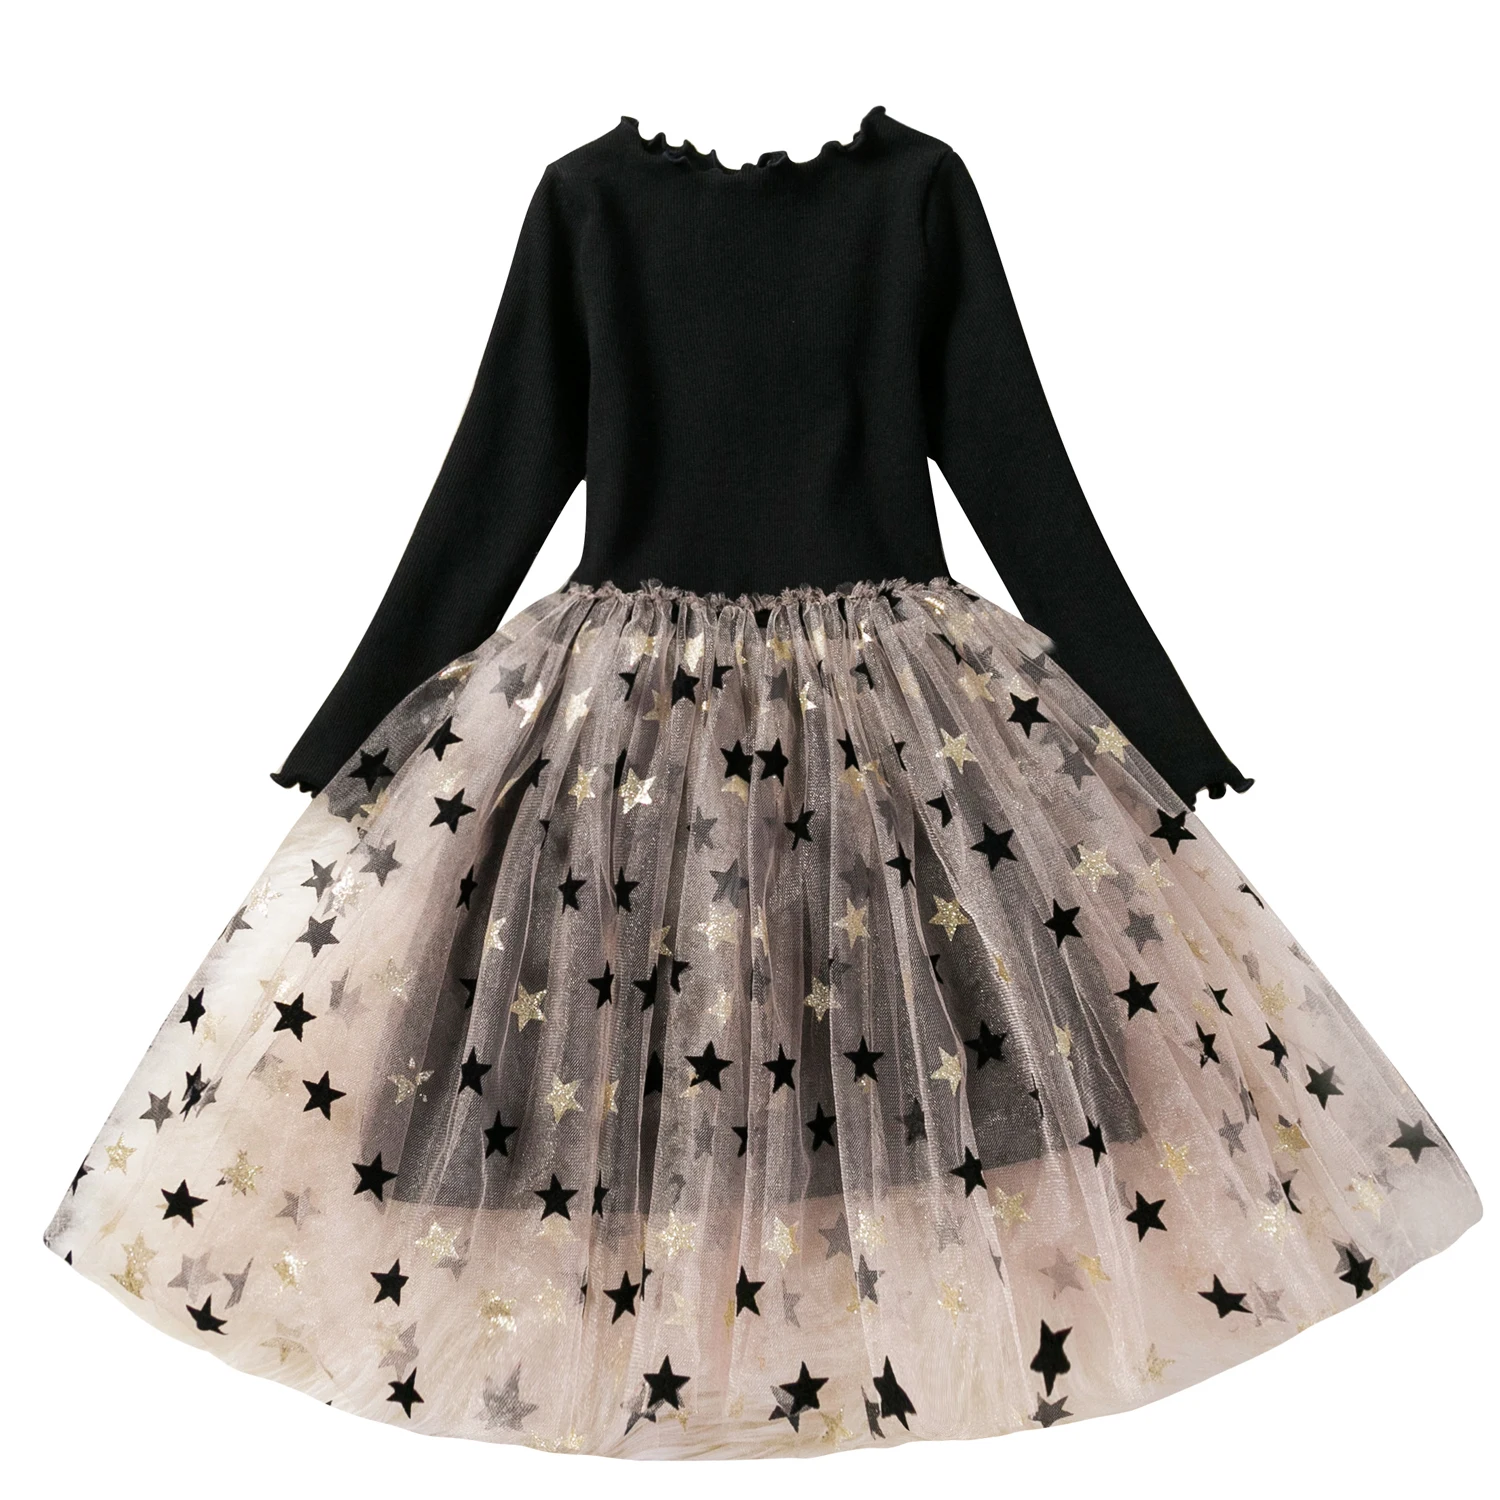 Детское нарядное платье с единорогом для девочек 3, 4, 5, 6, 7, 8 лет, праздничные платья принцессы с единорогом Детские платья для девочек, костюм - Цвет: Black